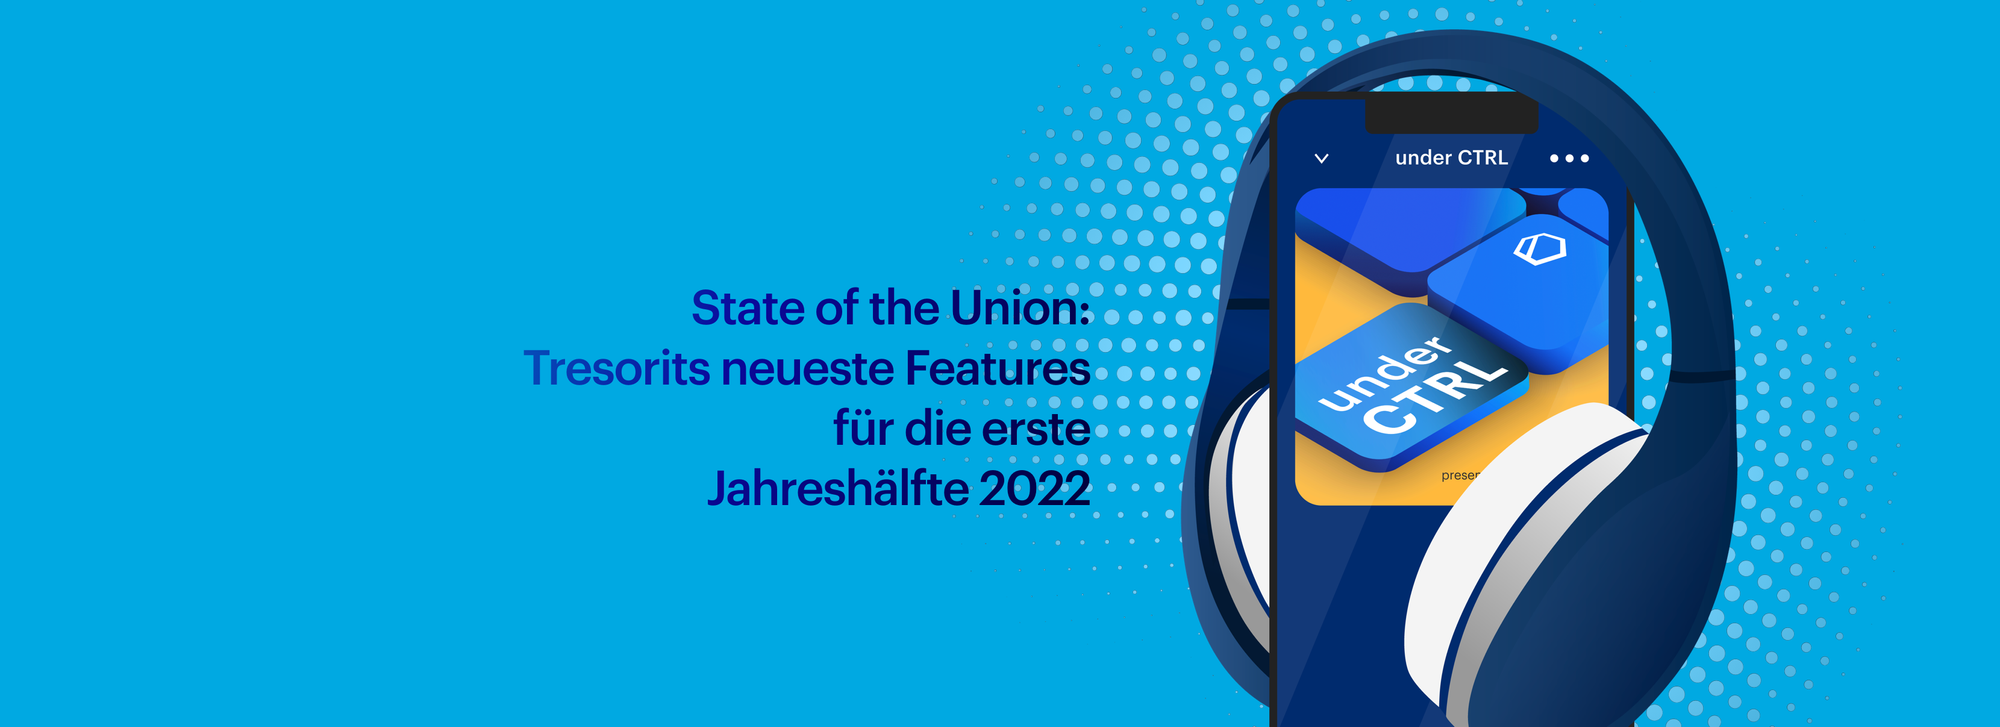 State of the Union: Tresorits neueste Features für die erste Jahreshälfte 2022